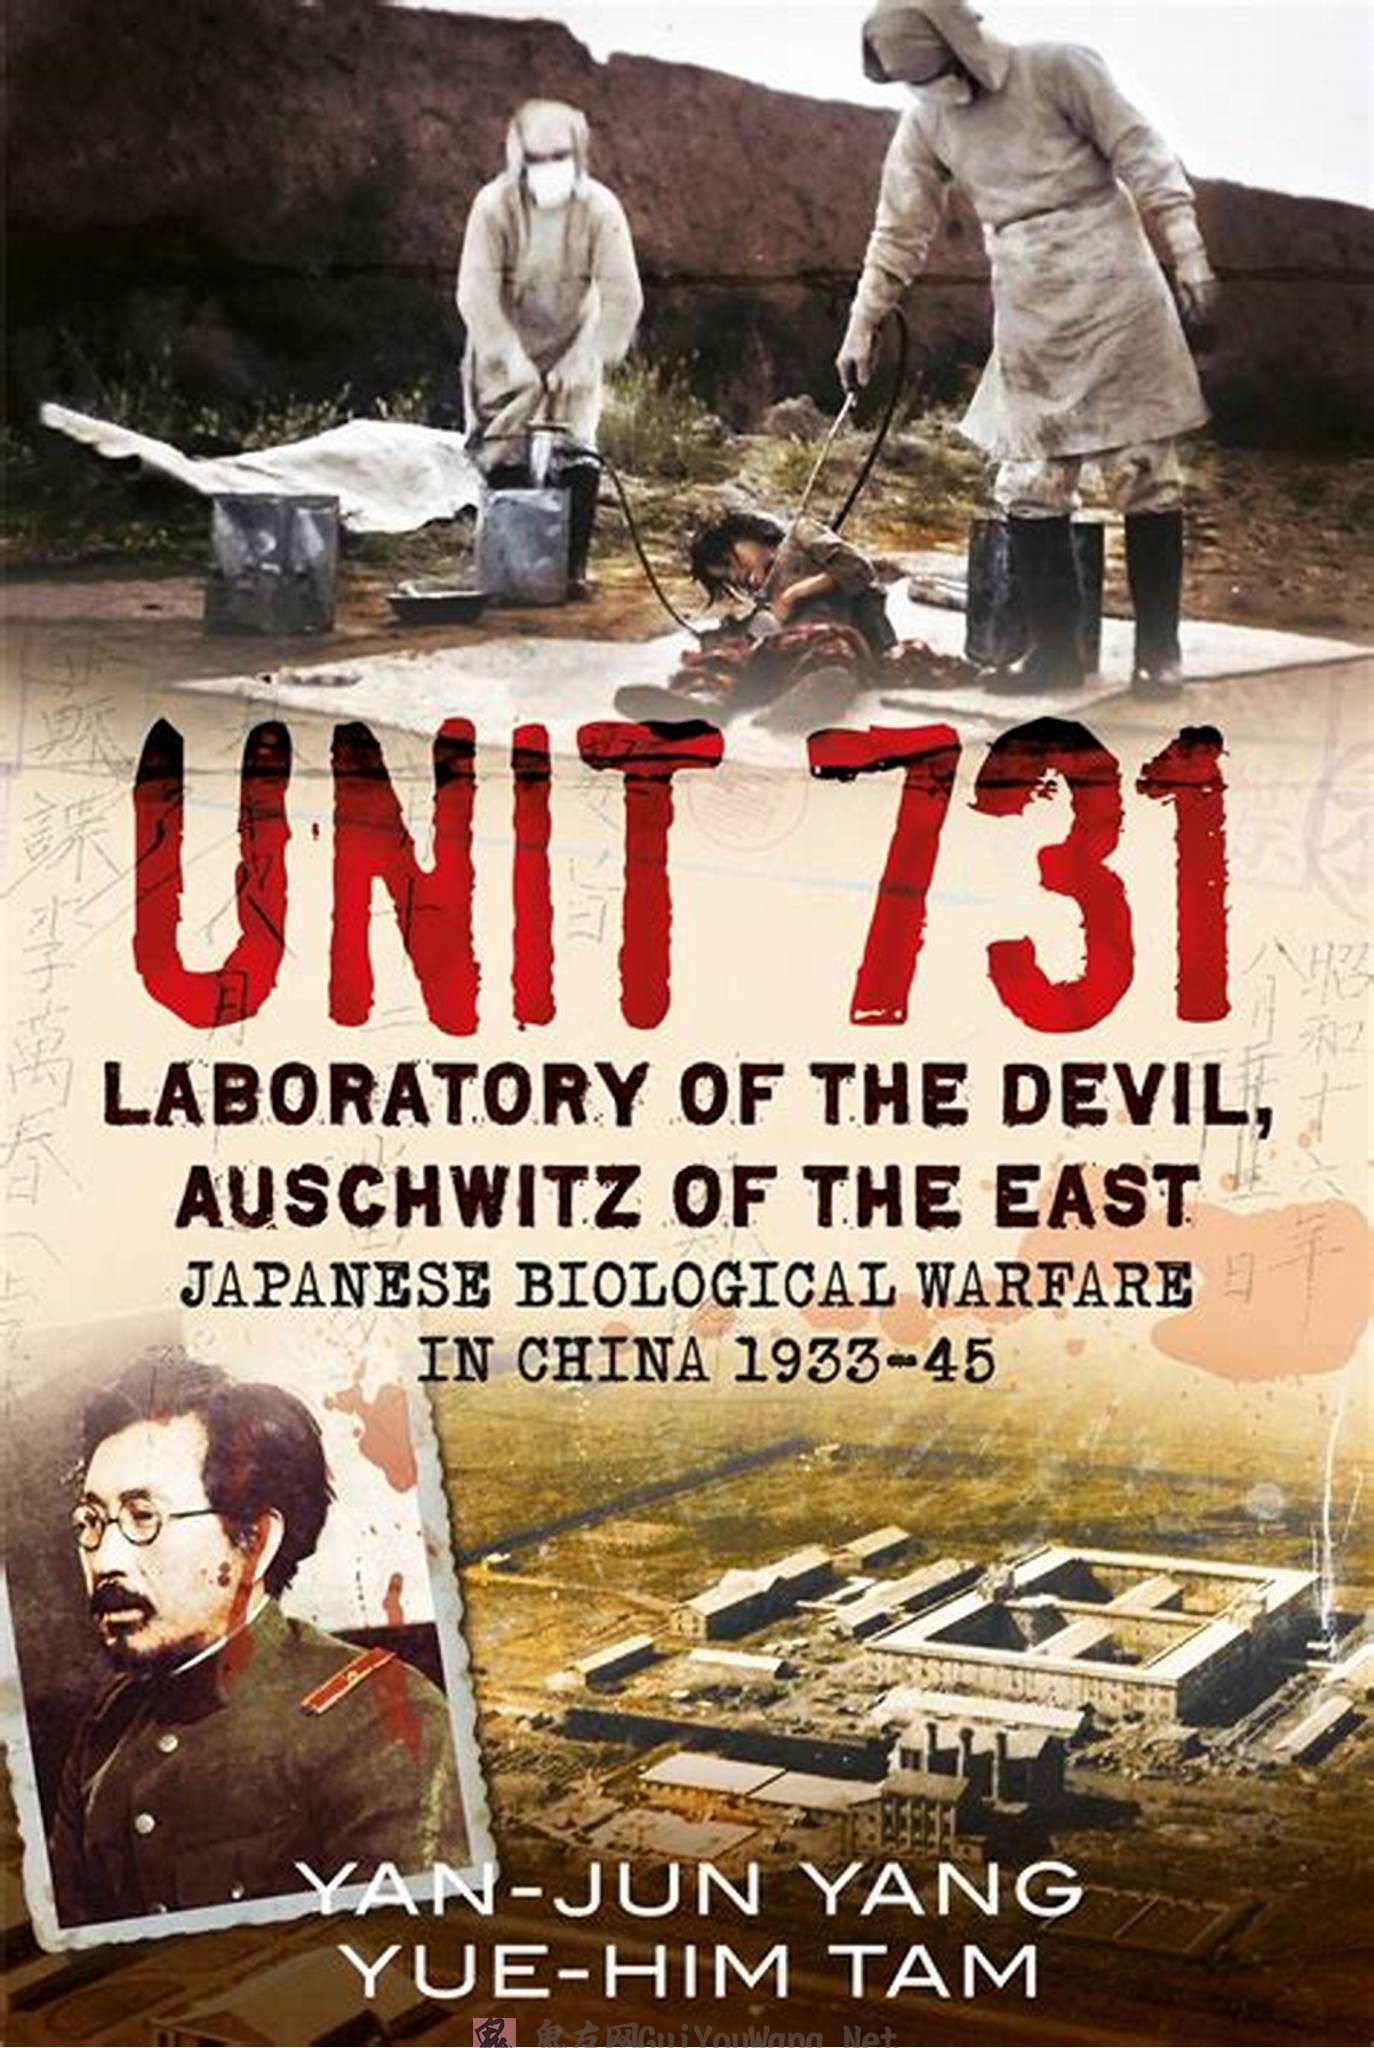 長大なトンネルに解剖室…旧日本軍「731部隊」最大規模の“地下実験場”内部が明らかに | 中国の考古学研究チームが調査 | クーリエ・ジャポン